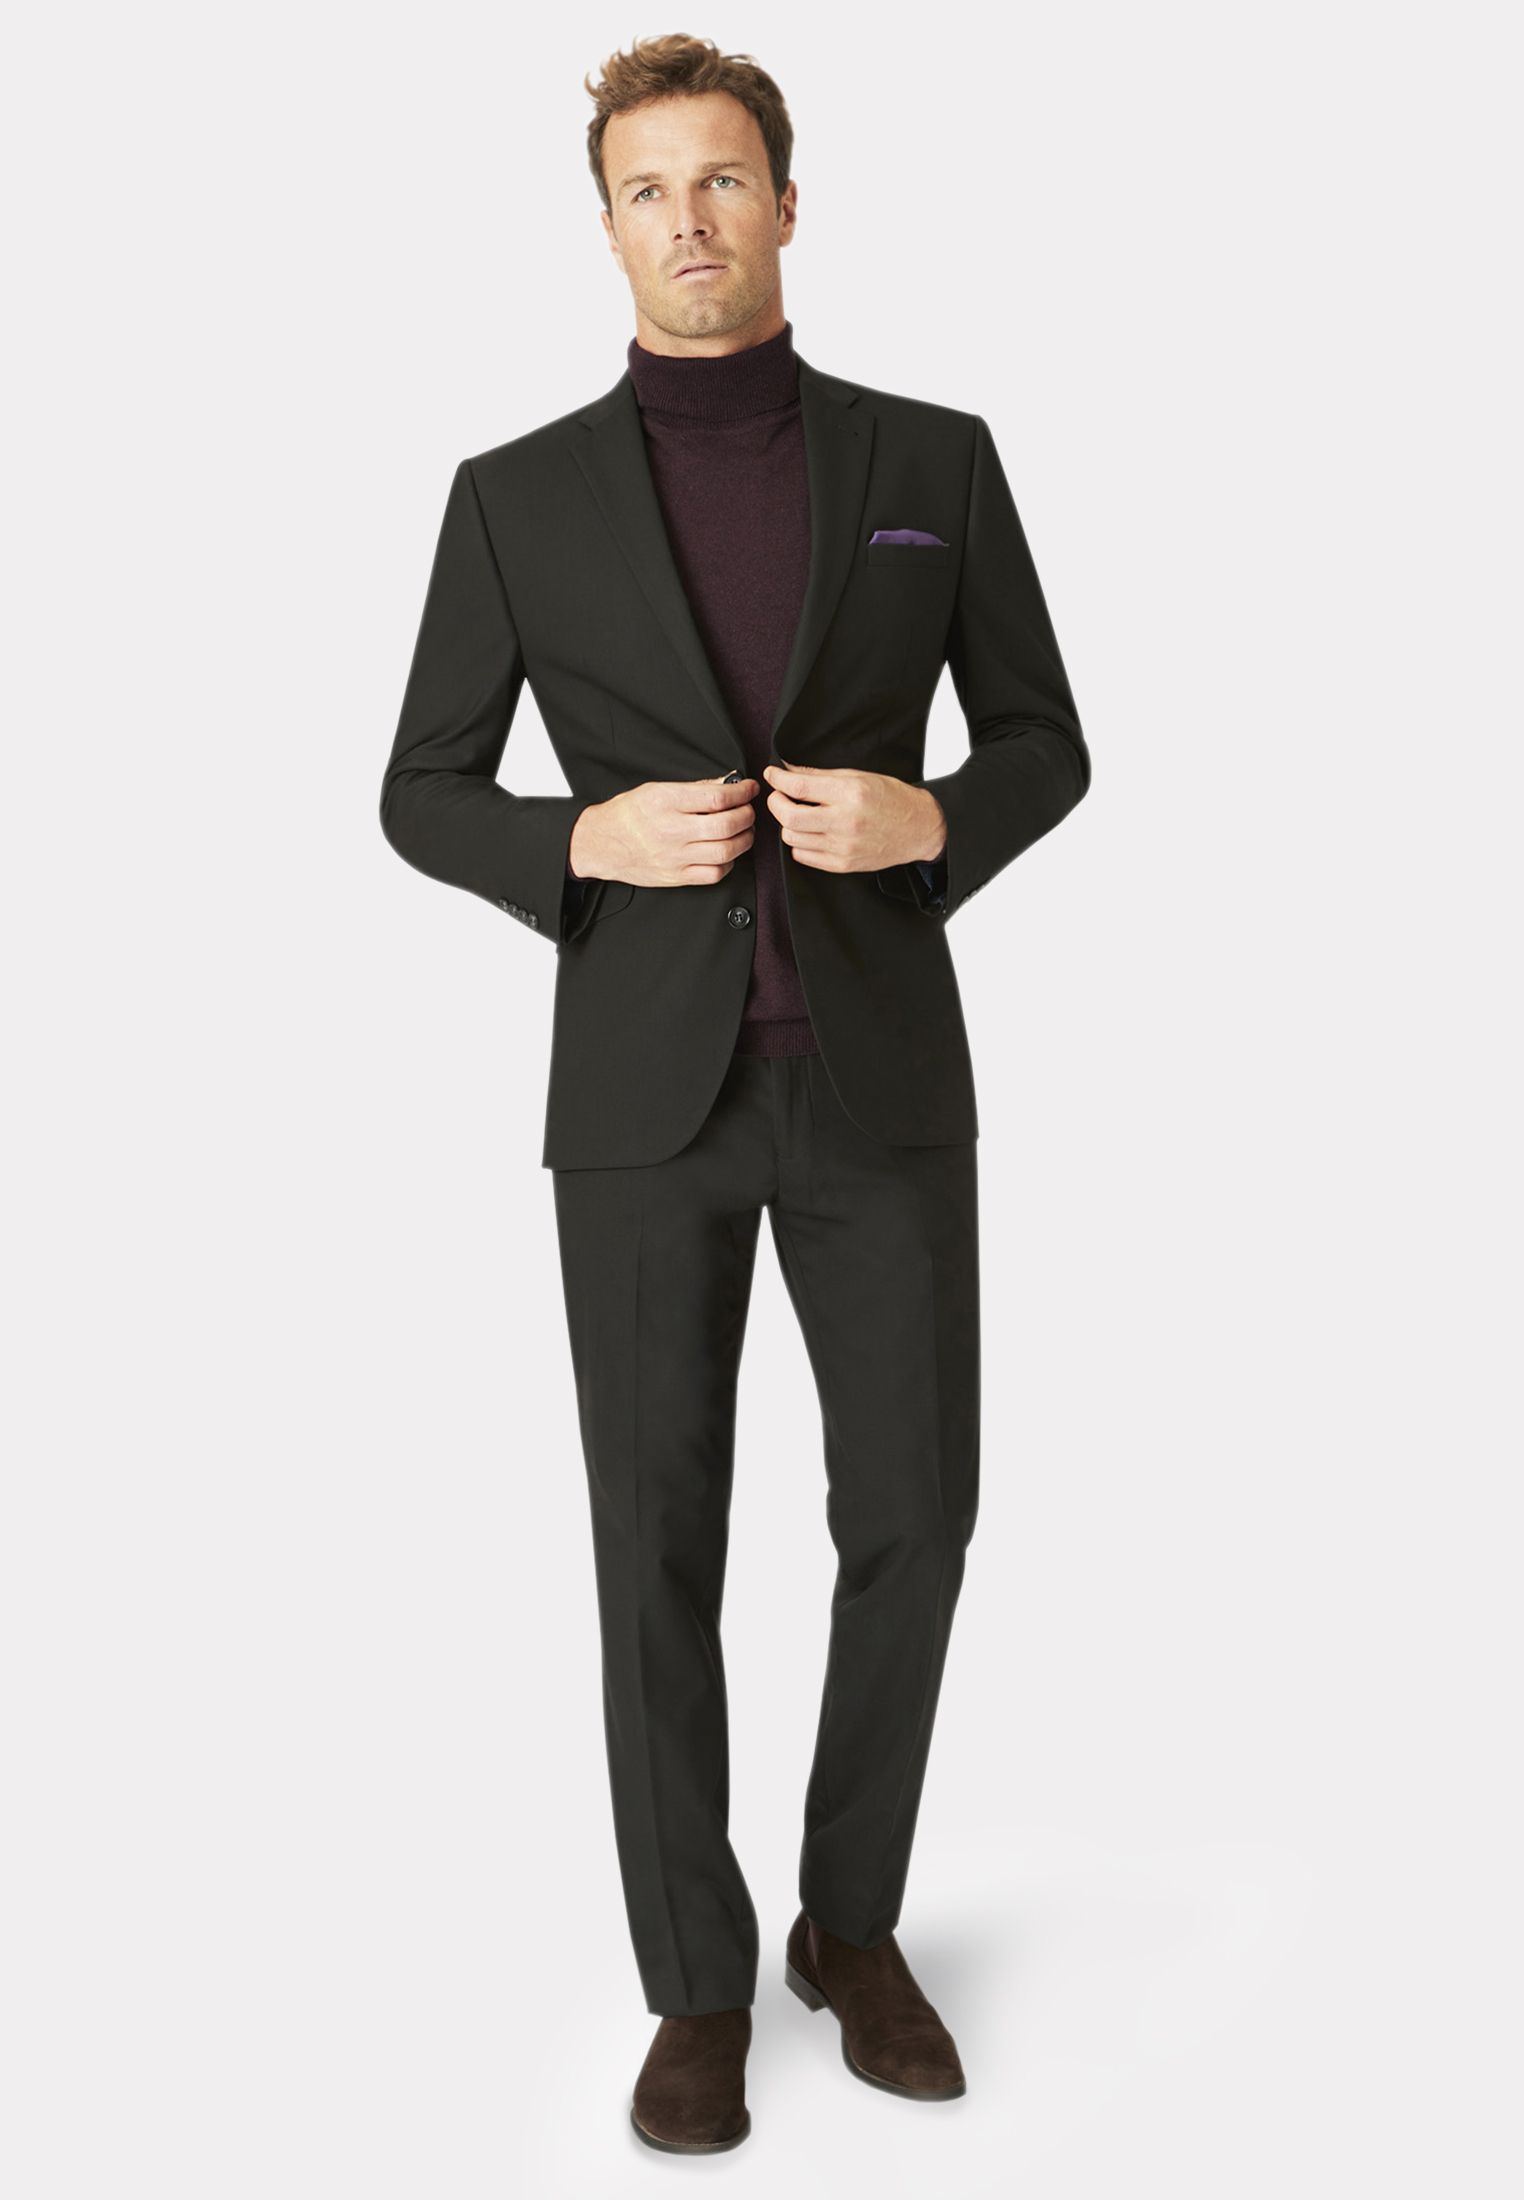 Tailored Fit Black Suit